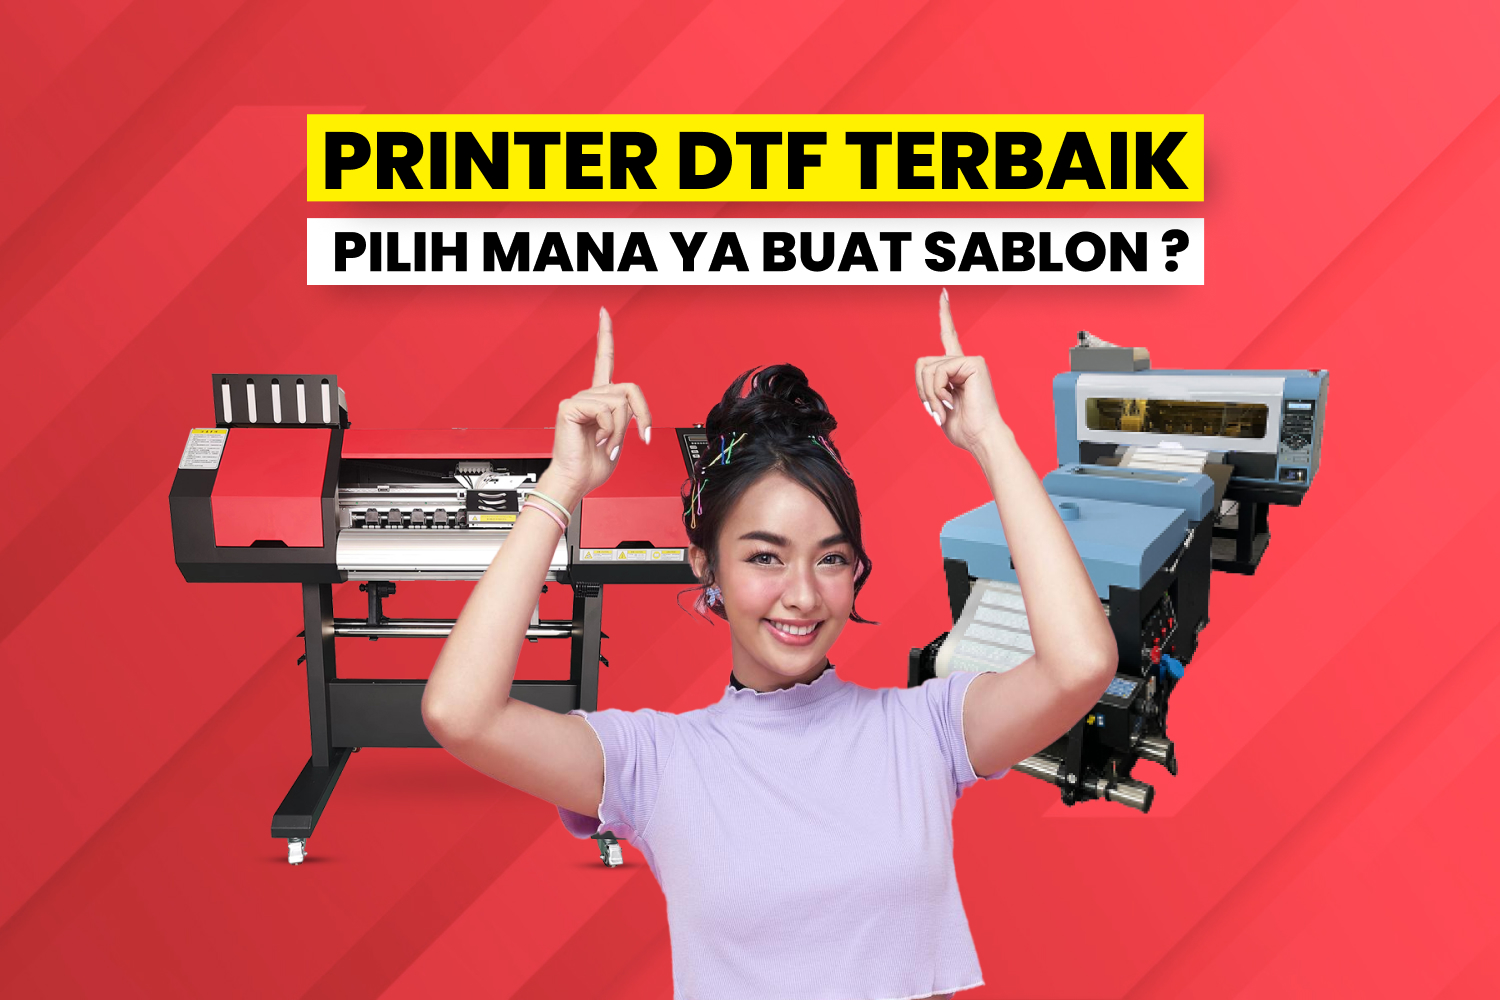 Printer Dtf Terbaik Untuk Bisnis Sablon